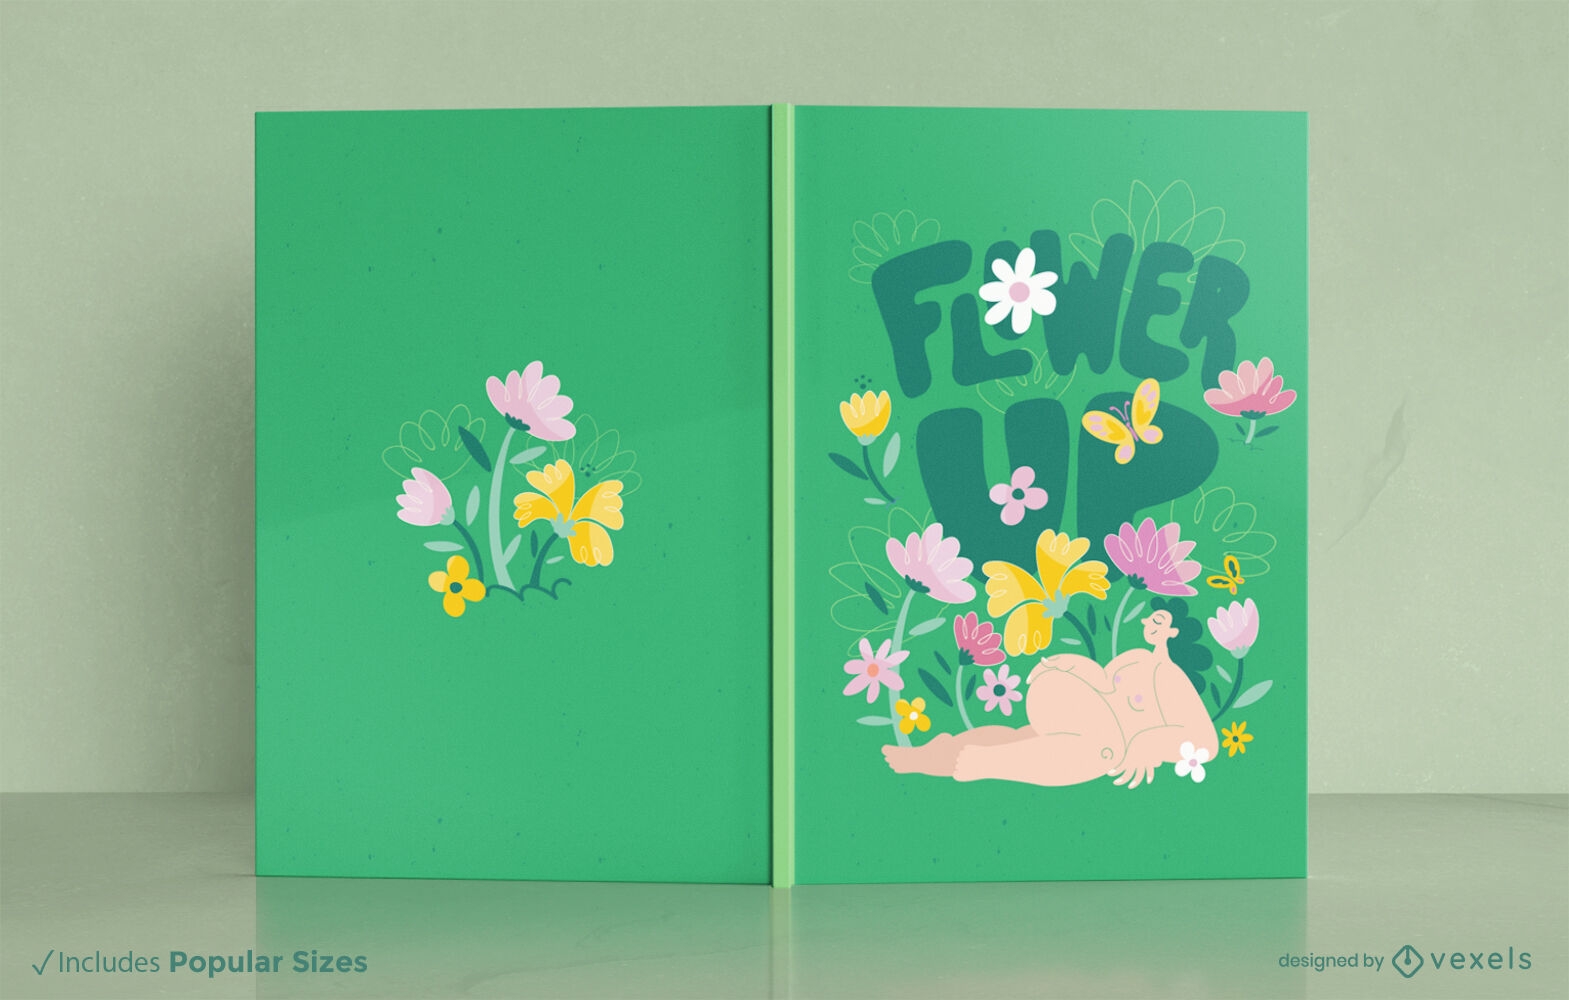 Descarga Vector De Diseño De Portada De Libro Floral De Primavera